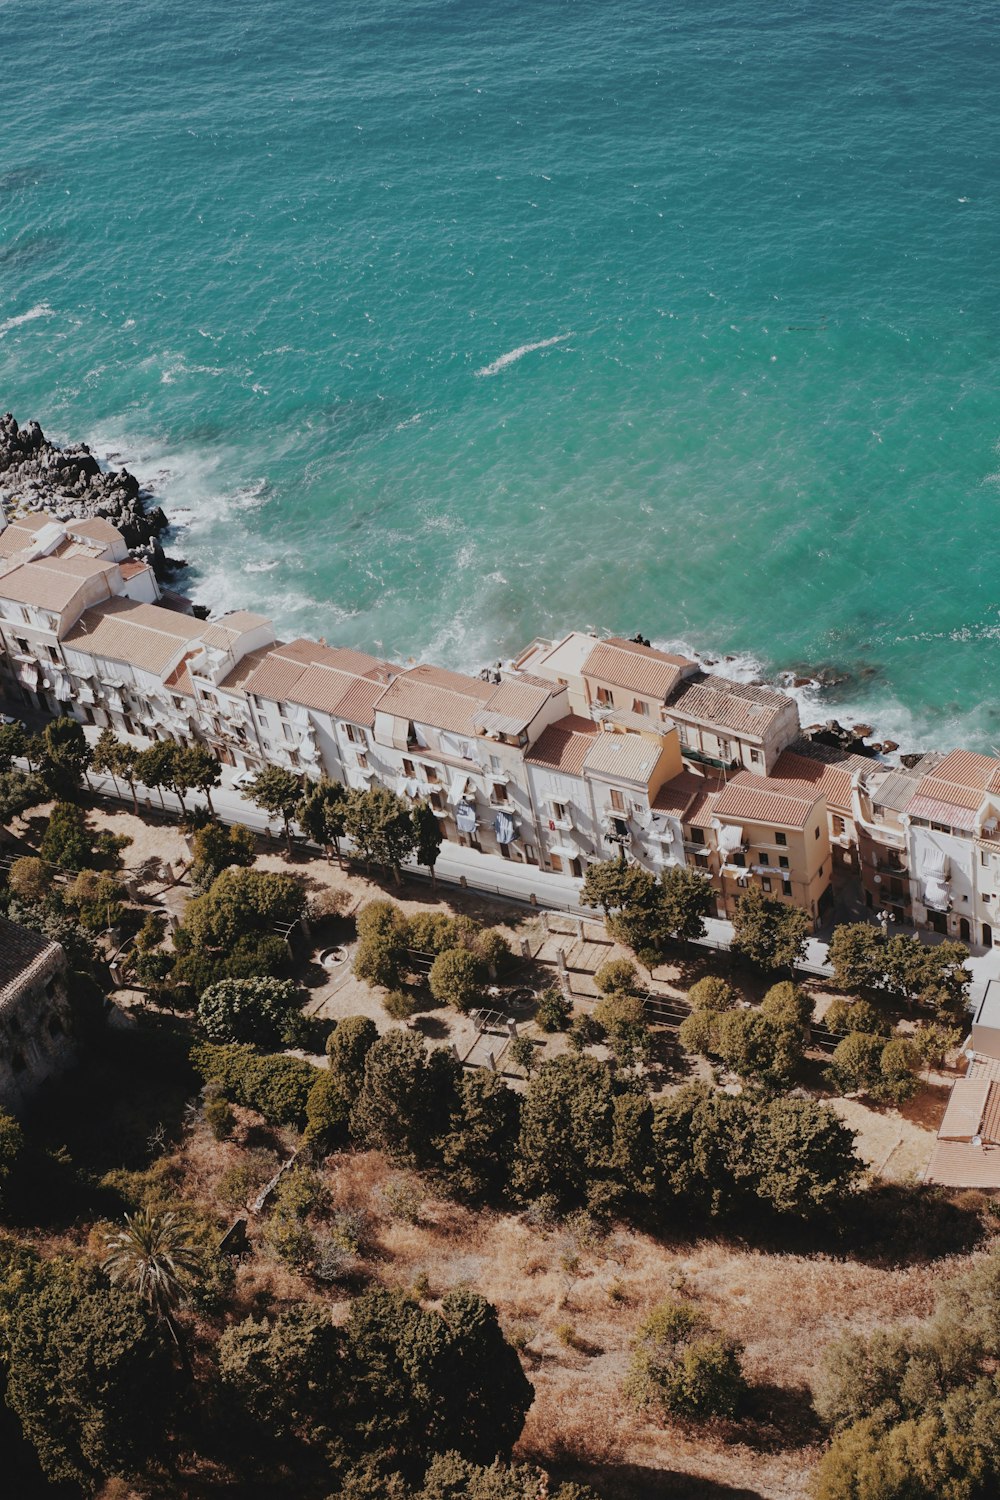 a bird's eye view of a beachfront resort